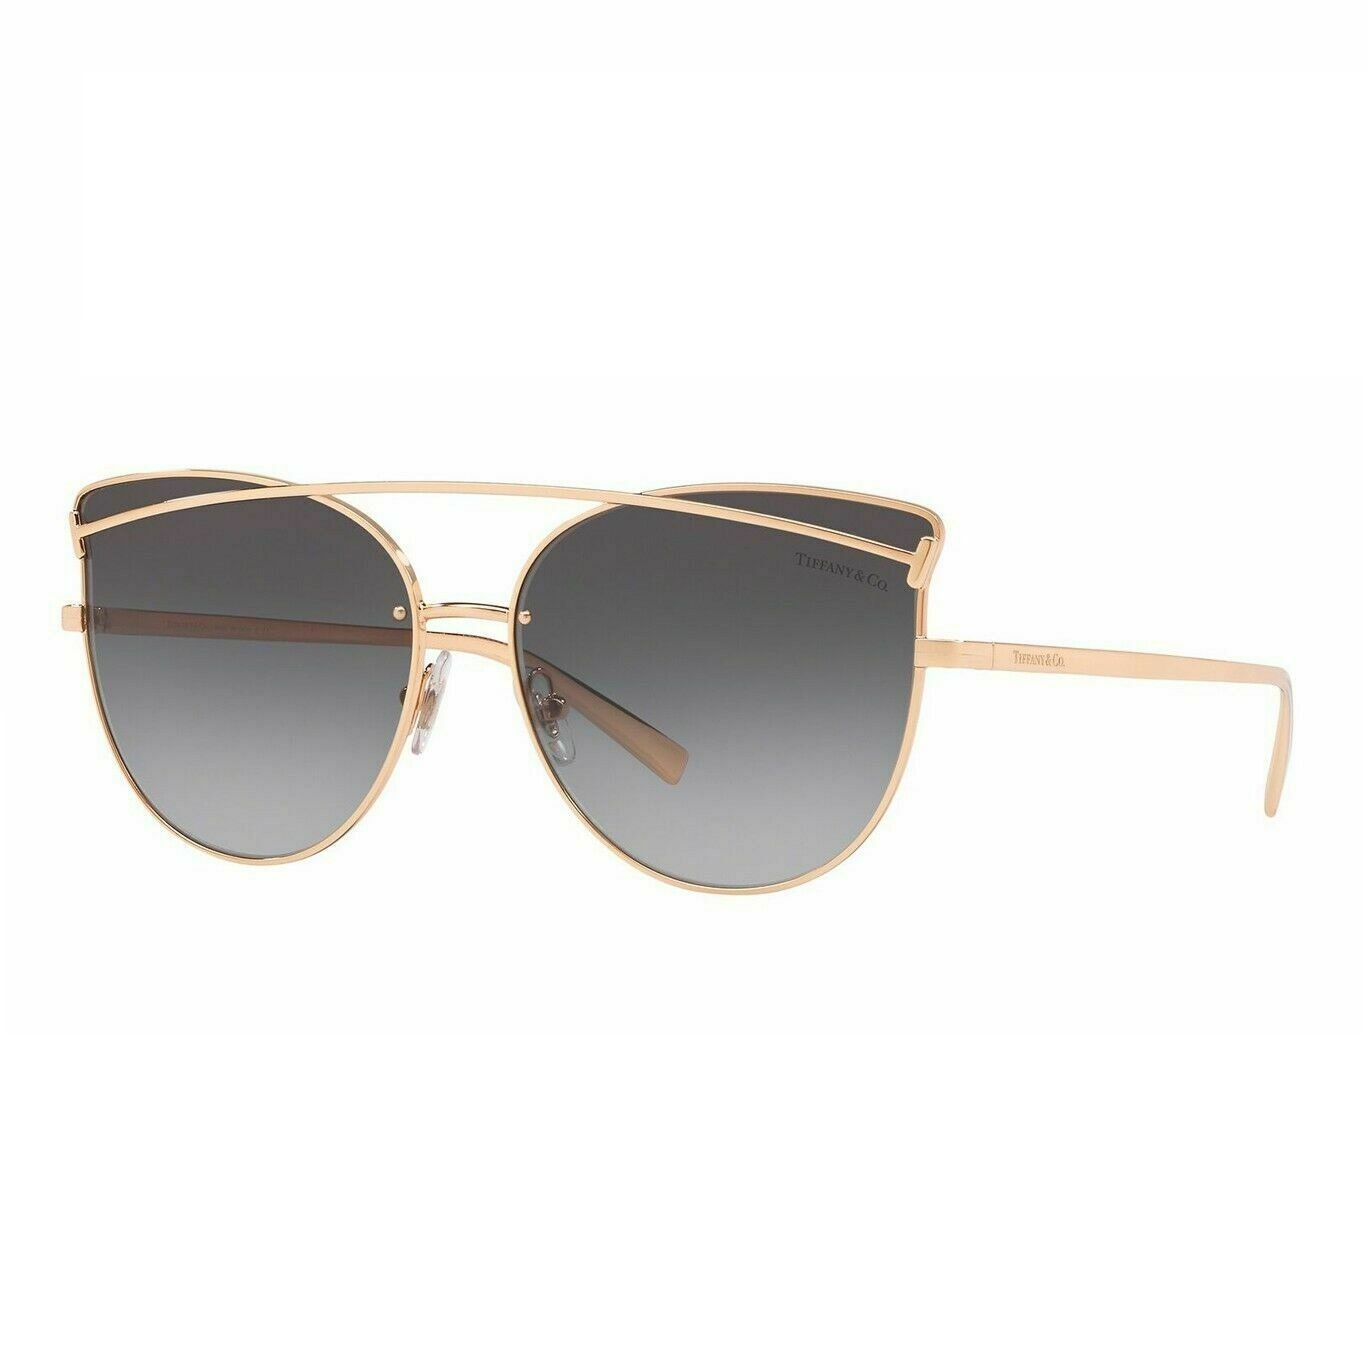 Tiffany & Co. TF3064 Sunglasses - Purevision - The Sunglasses Shop in ...